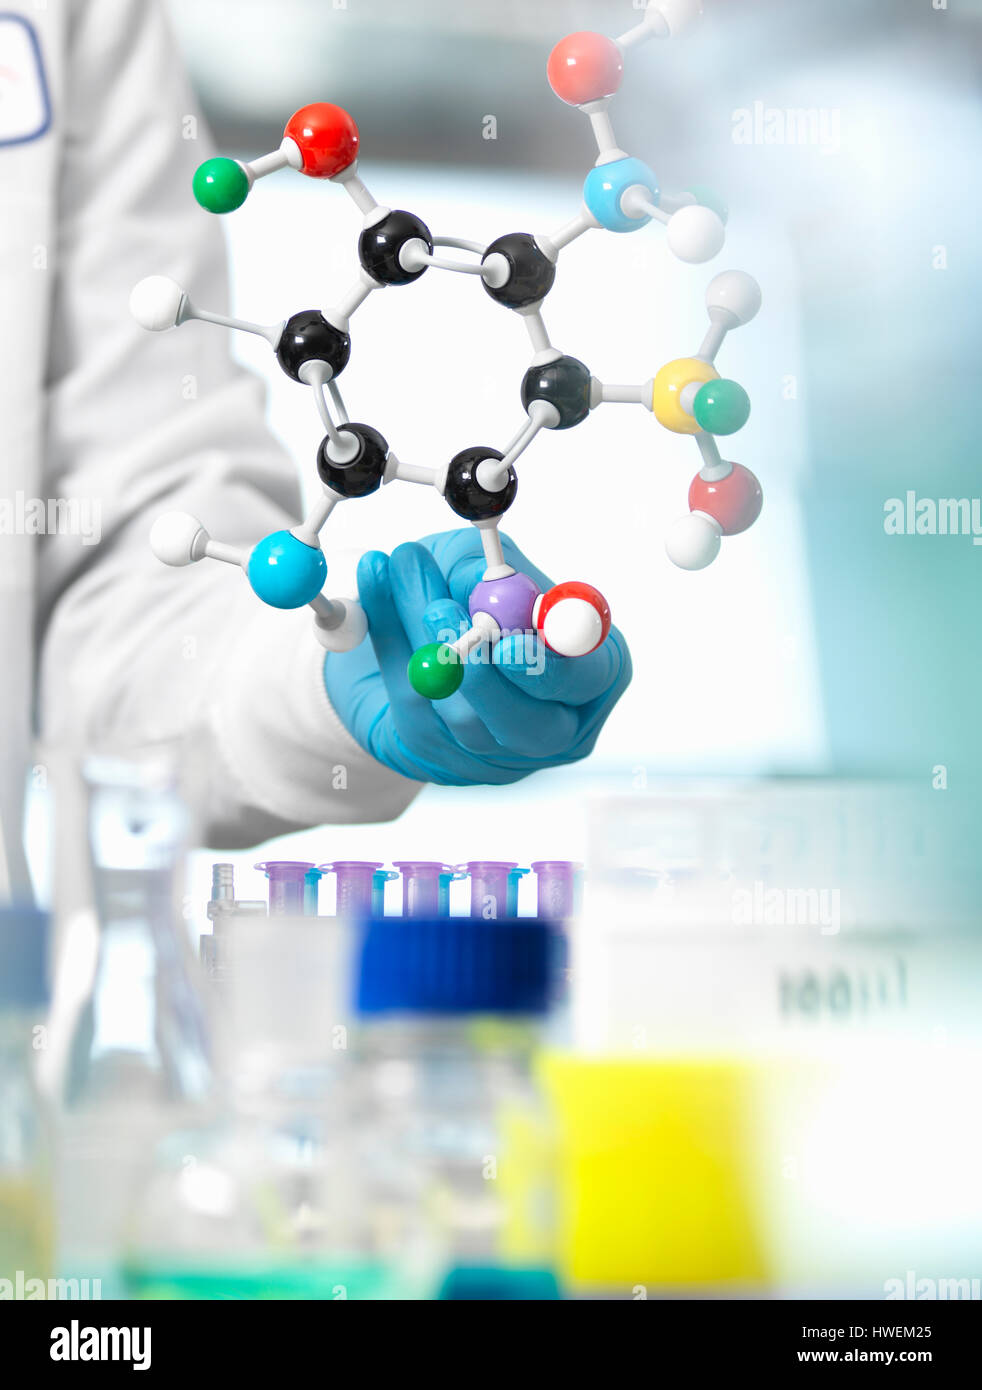 Un chercheur utilise un modèle moléculaire pour comprendre une formule chimique dans un laboratoire Banque D'Images